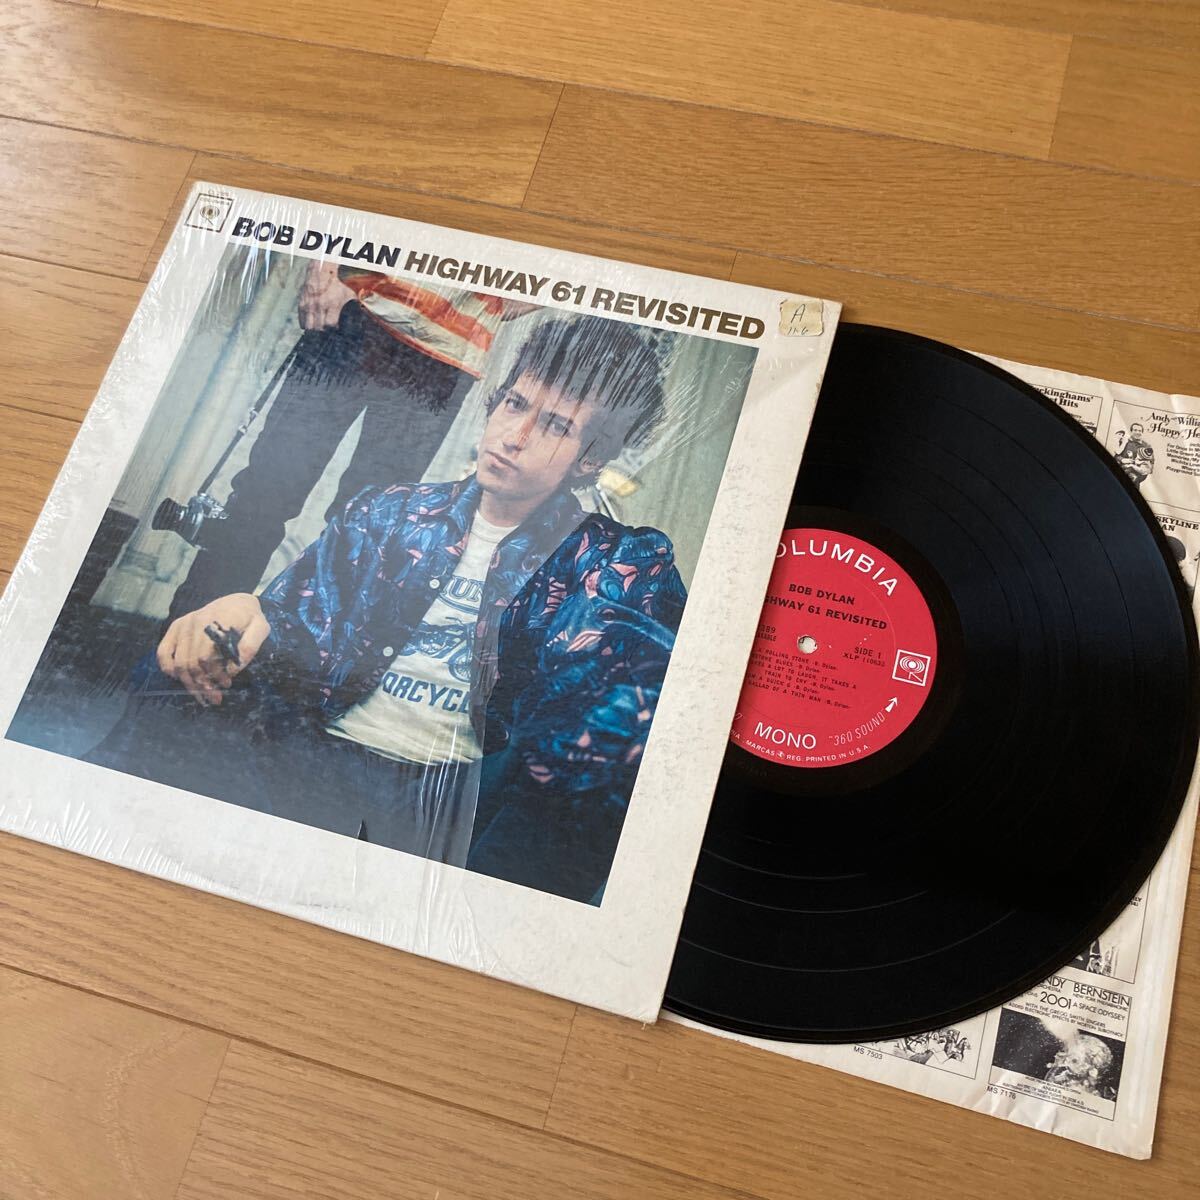 Bob Dylan 追憶のハイウェイ61 米国オリジナルモノラル盤 Highway 61 Revisited  ボブディラン 両マト1Aの画像1